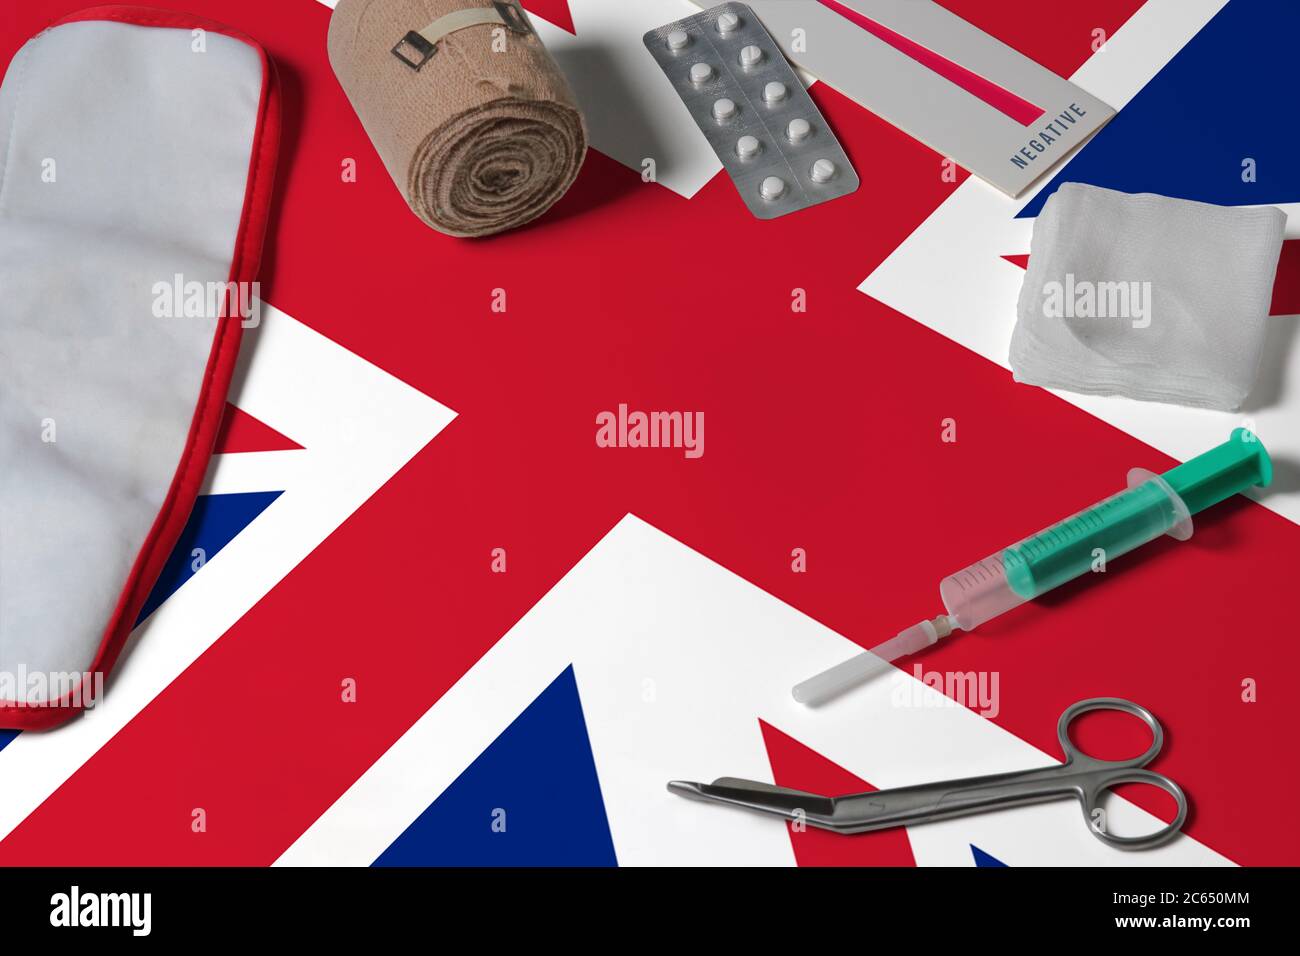 Britische Flagge mit Verbandskasten auf Holztisch Hintergrund. Nationales Gesundheitssystem Konzept, medizinisches Thema. Stockfoto